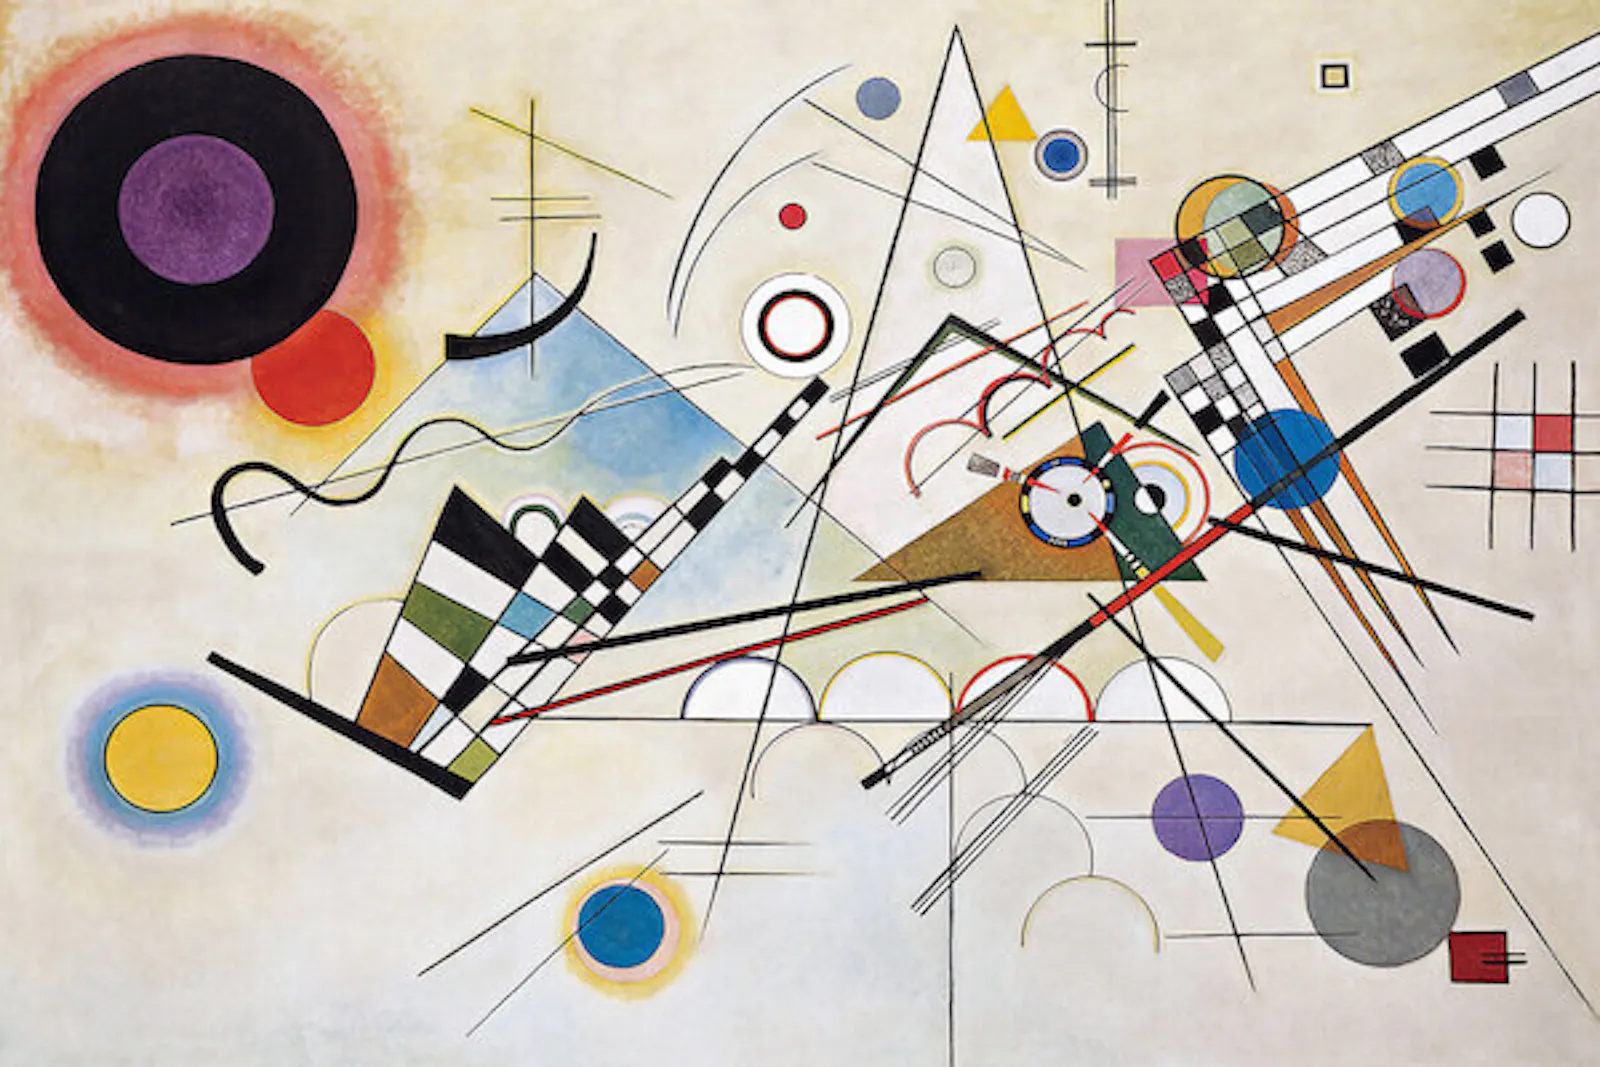 obra de Kandinsky de arte abstracto con fondo blanco, circulos y líneas